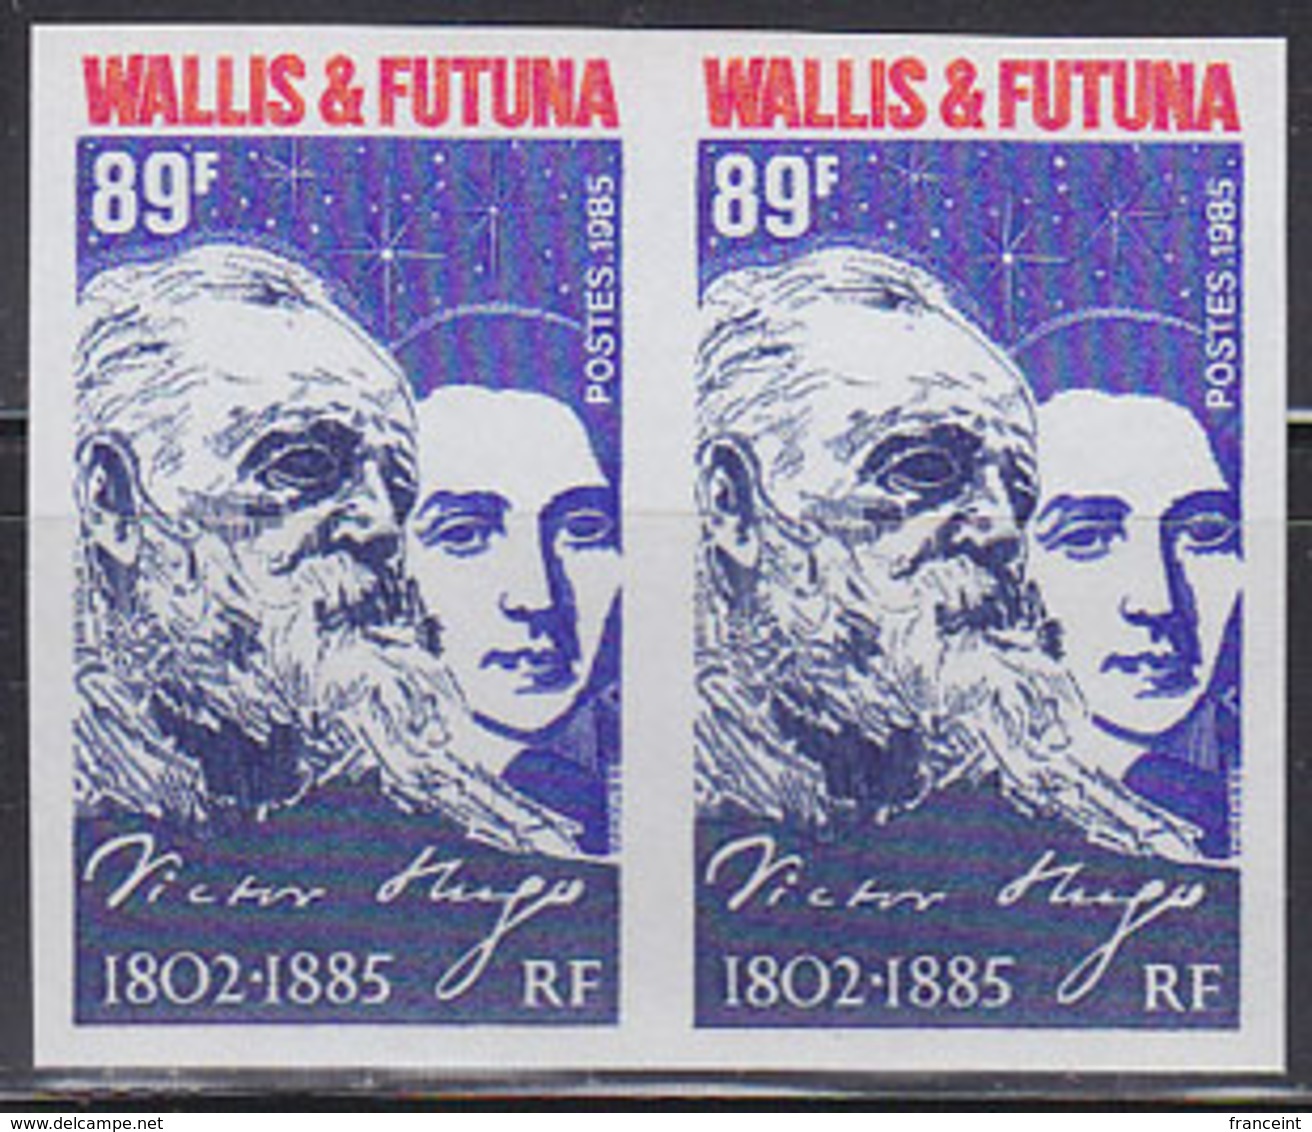 WALLIS & FUTUNA (1985) Victor Hugo Portraits In His Youth And Old Age. Imperforate Pair. Scott No 326. Yvert No 329. - Sin Dentar, Pruebas De Impresión Y Variedades